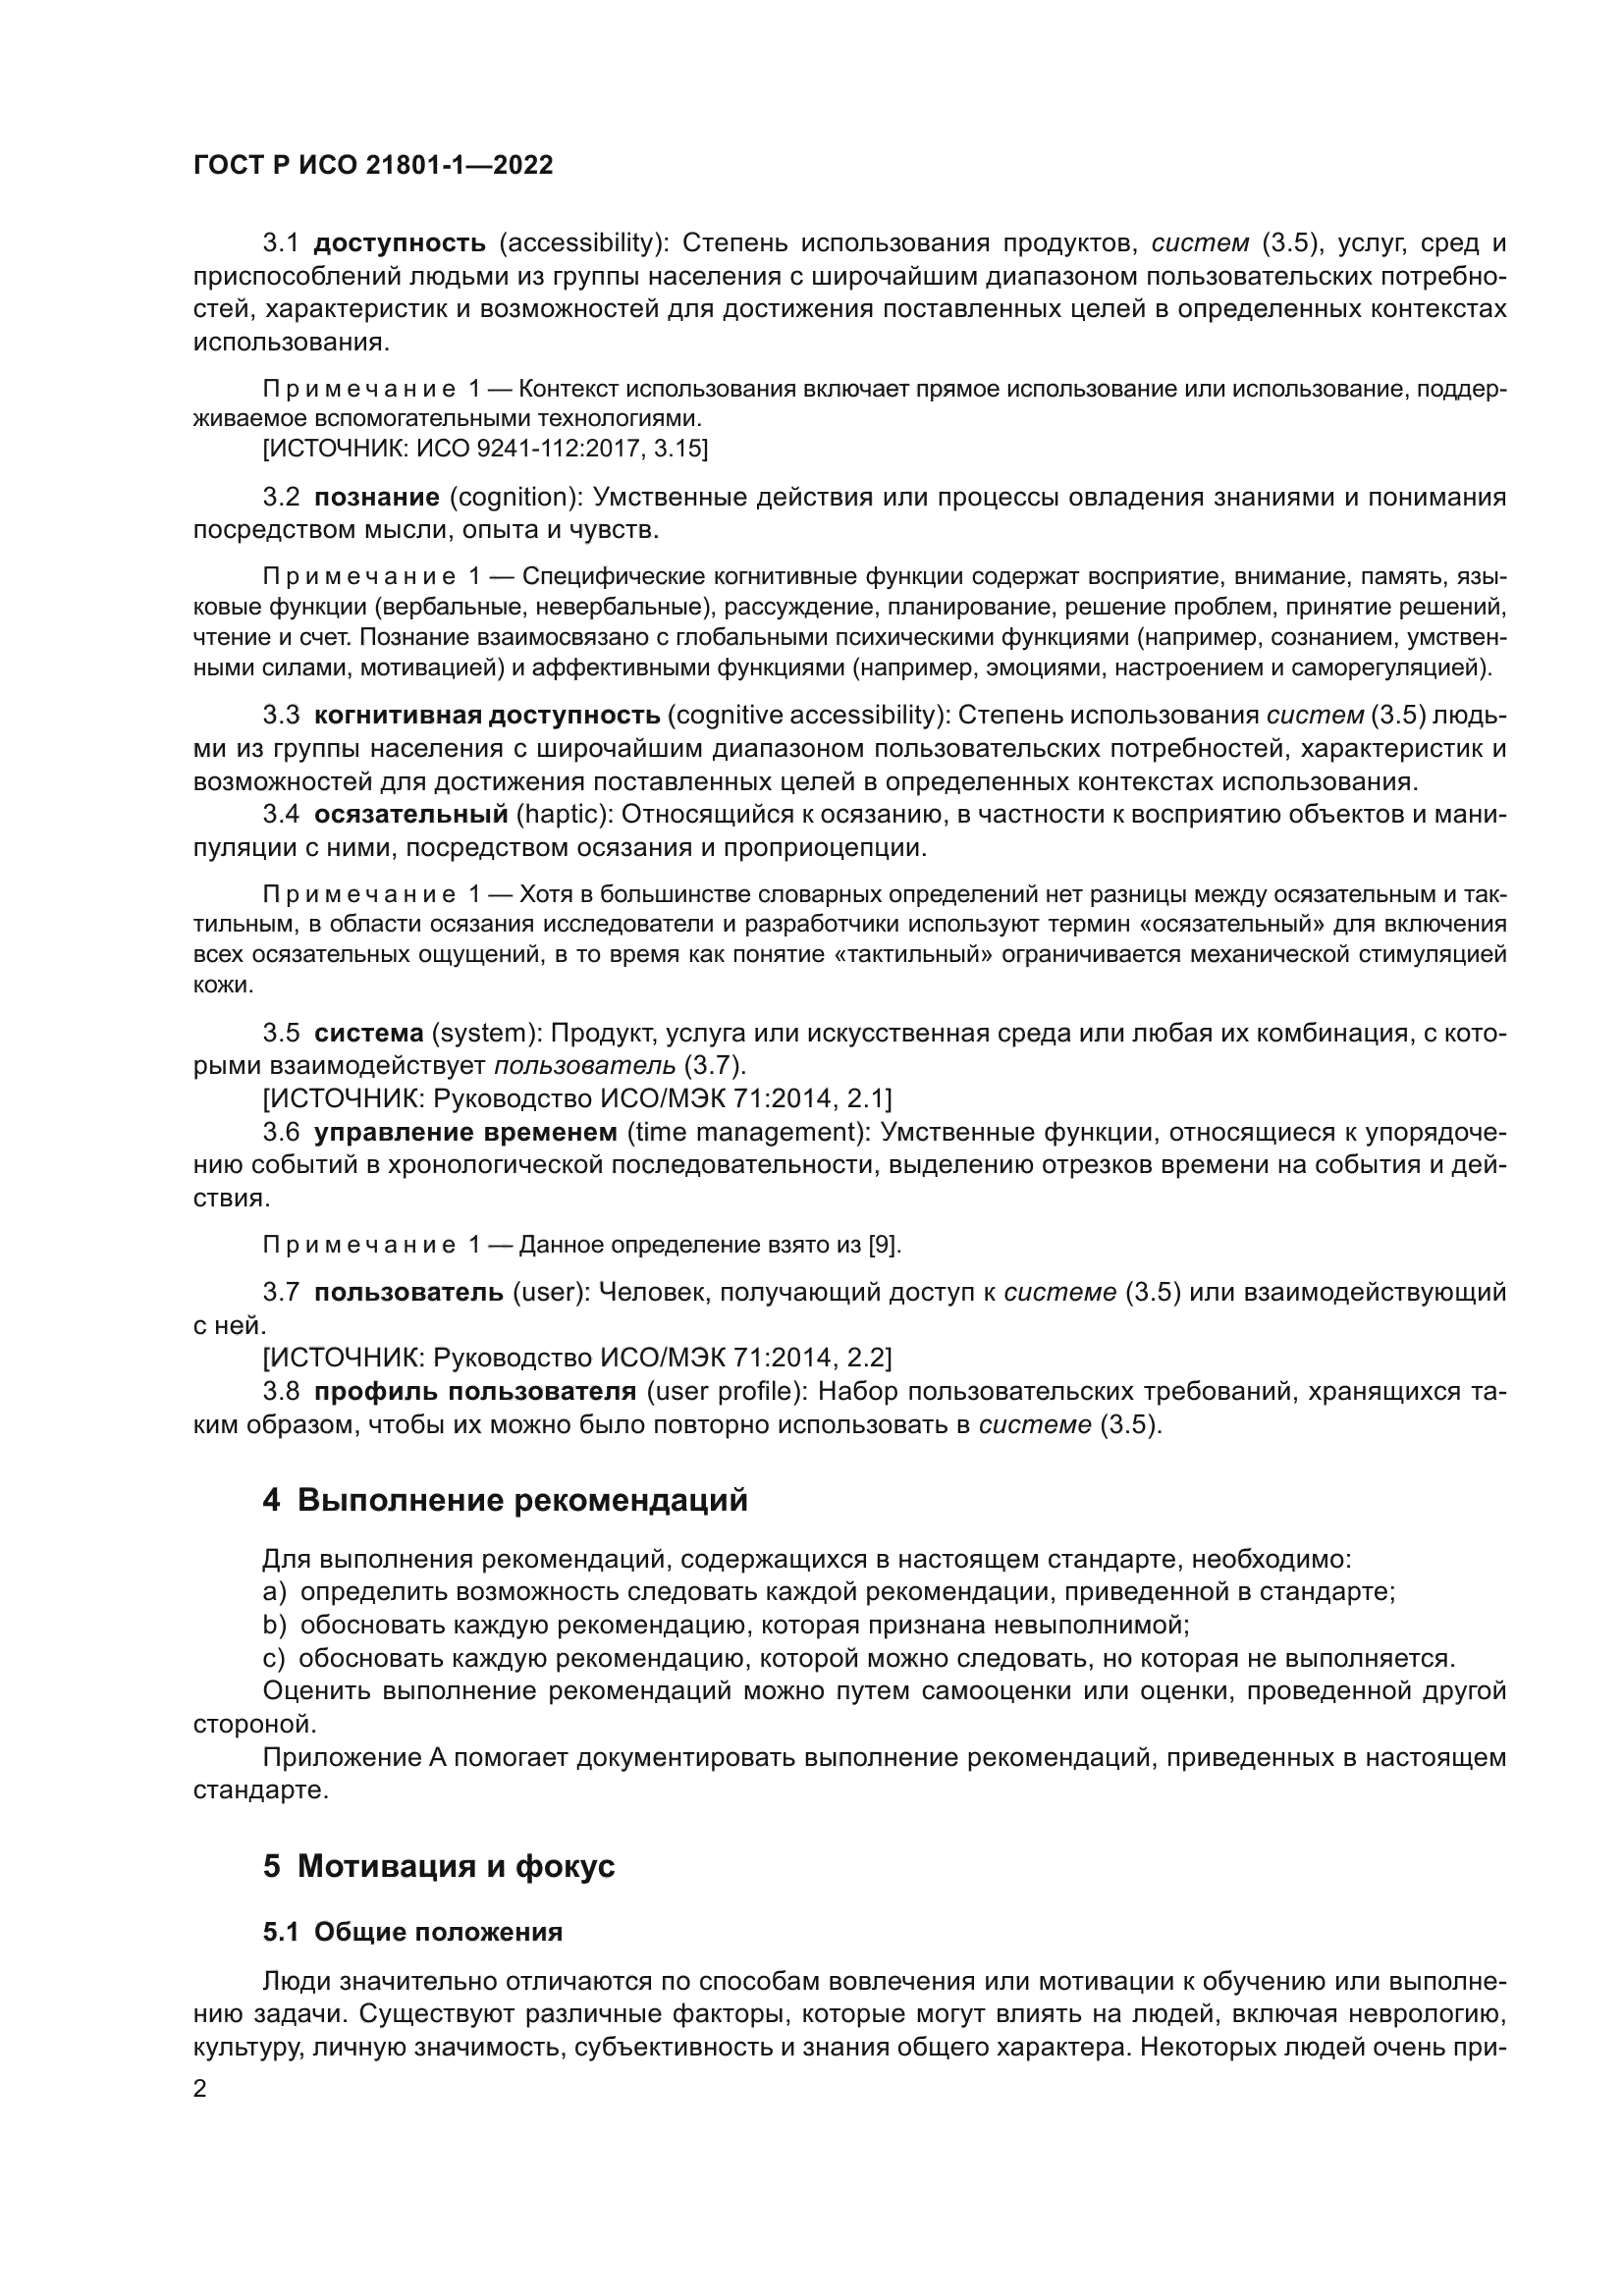 ГОСТ Р ИСО 21801-1-2022